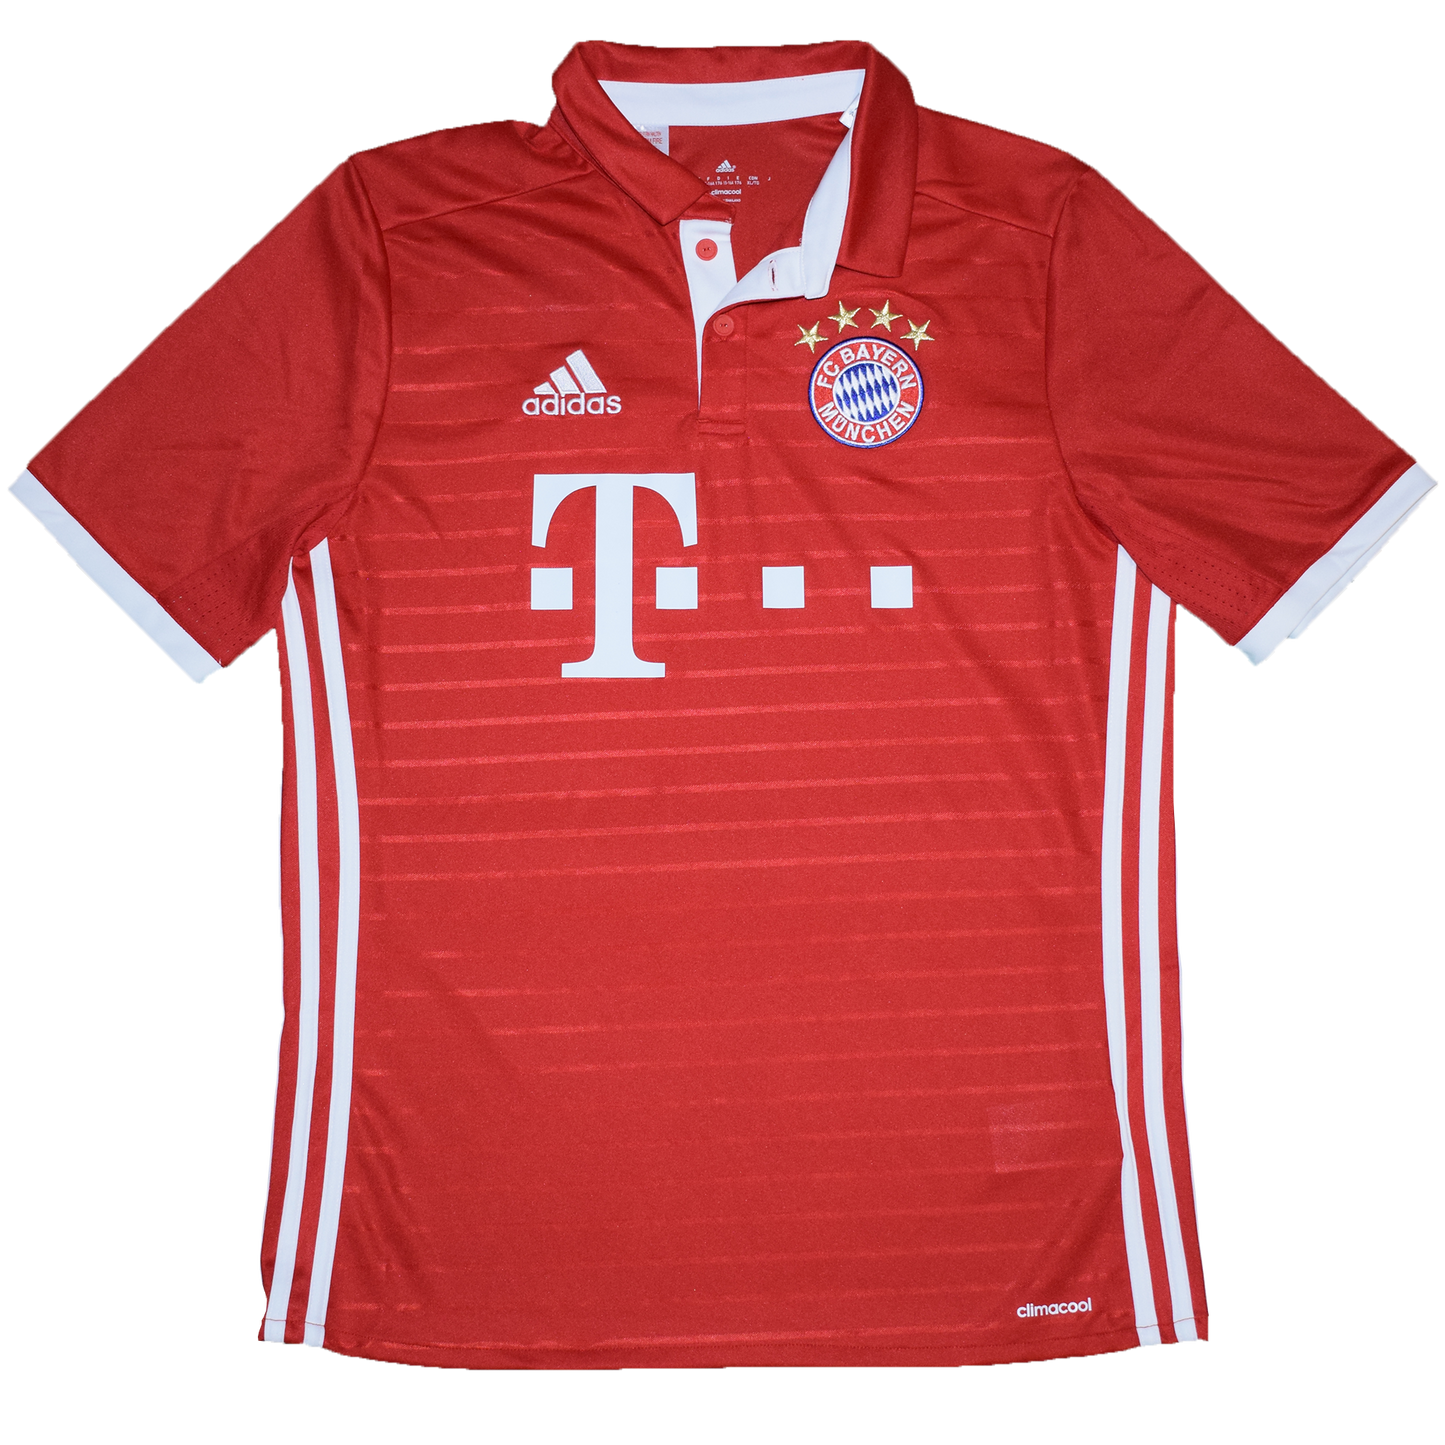 Bayern München 2016/17 Home kit YXL (Kids)